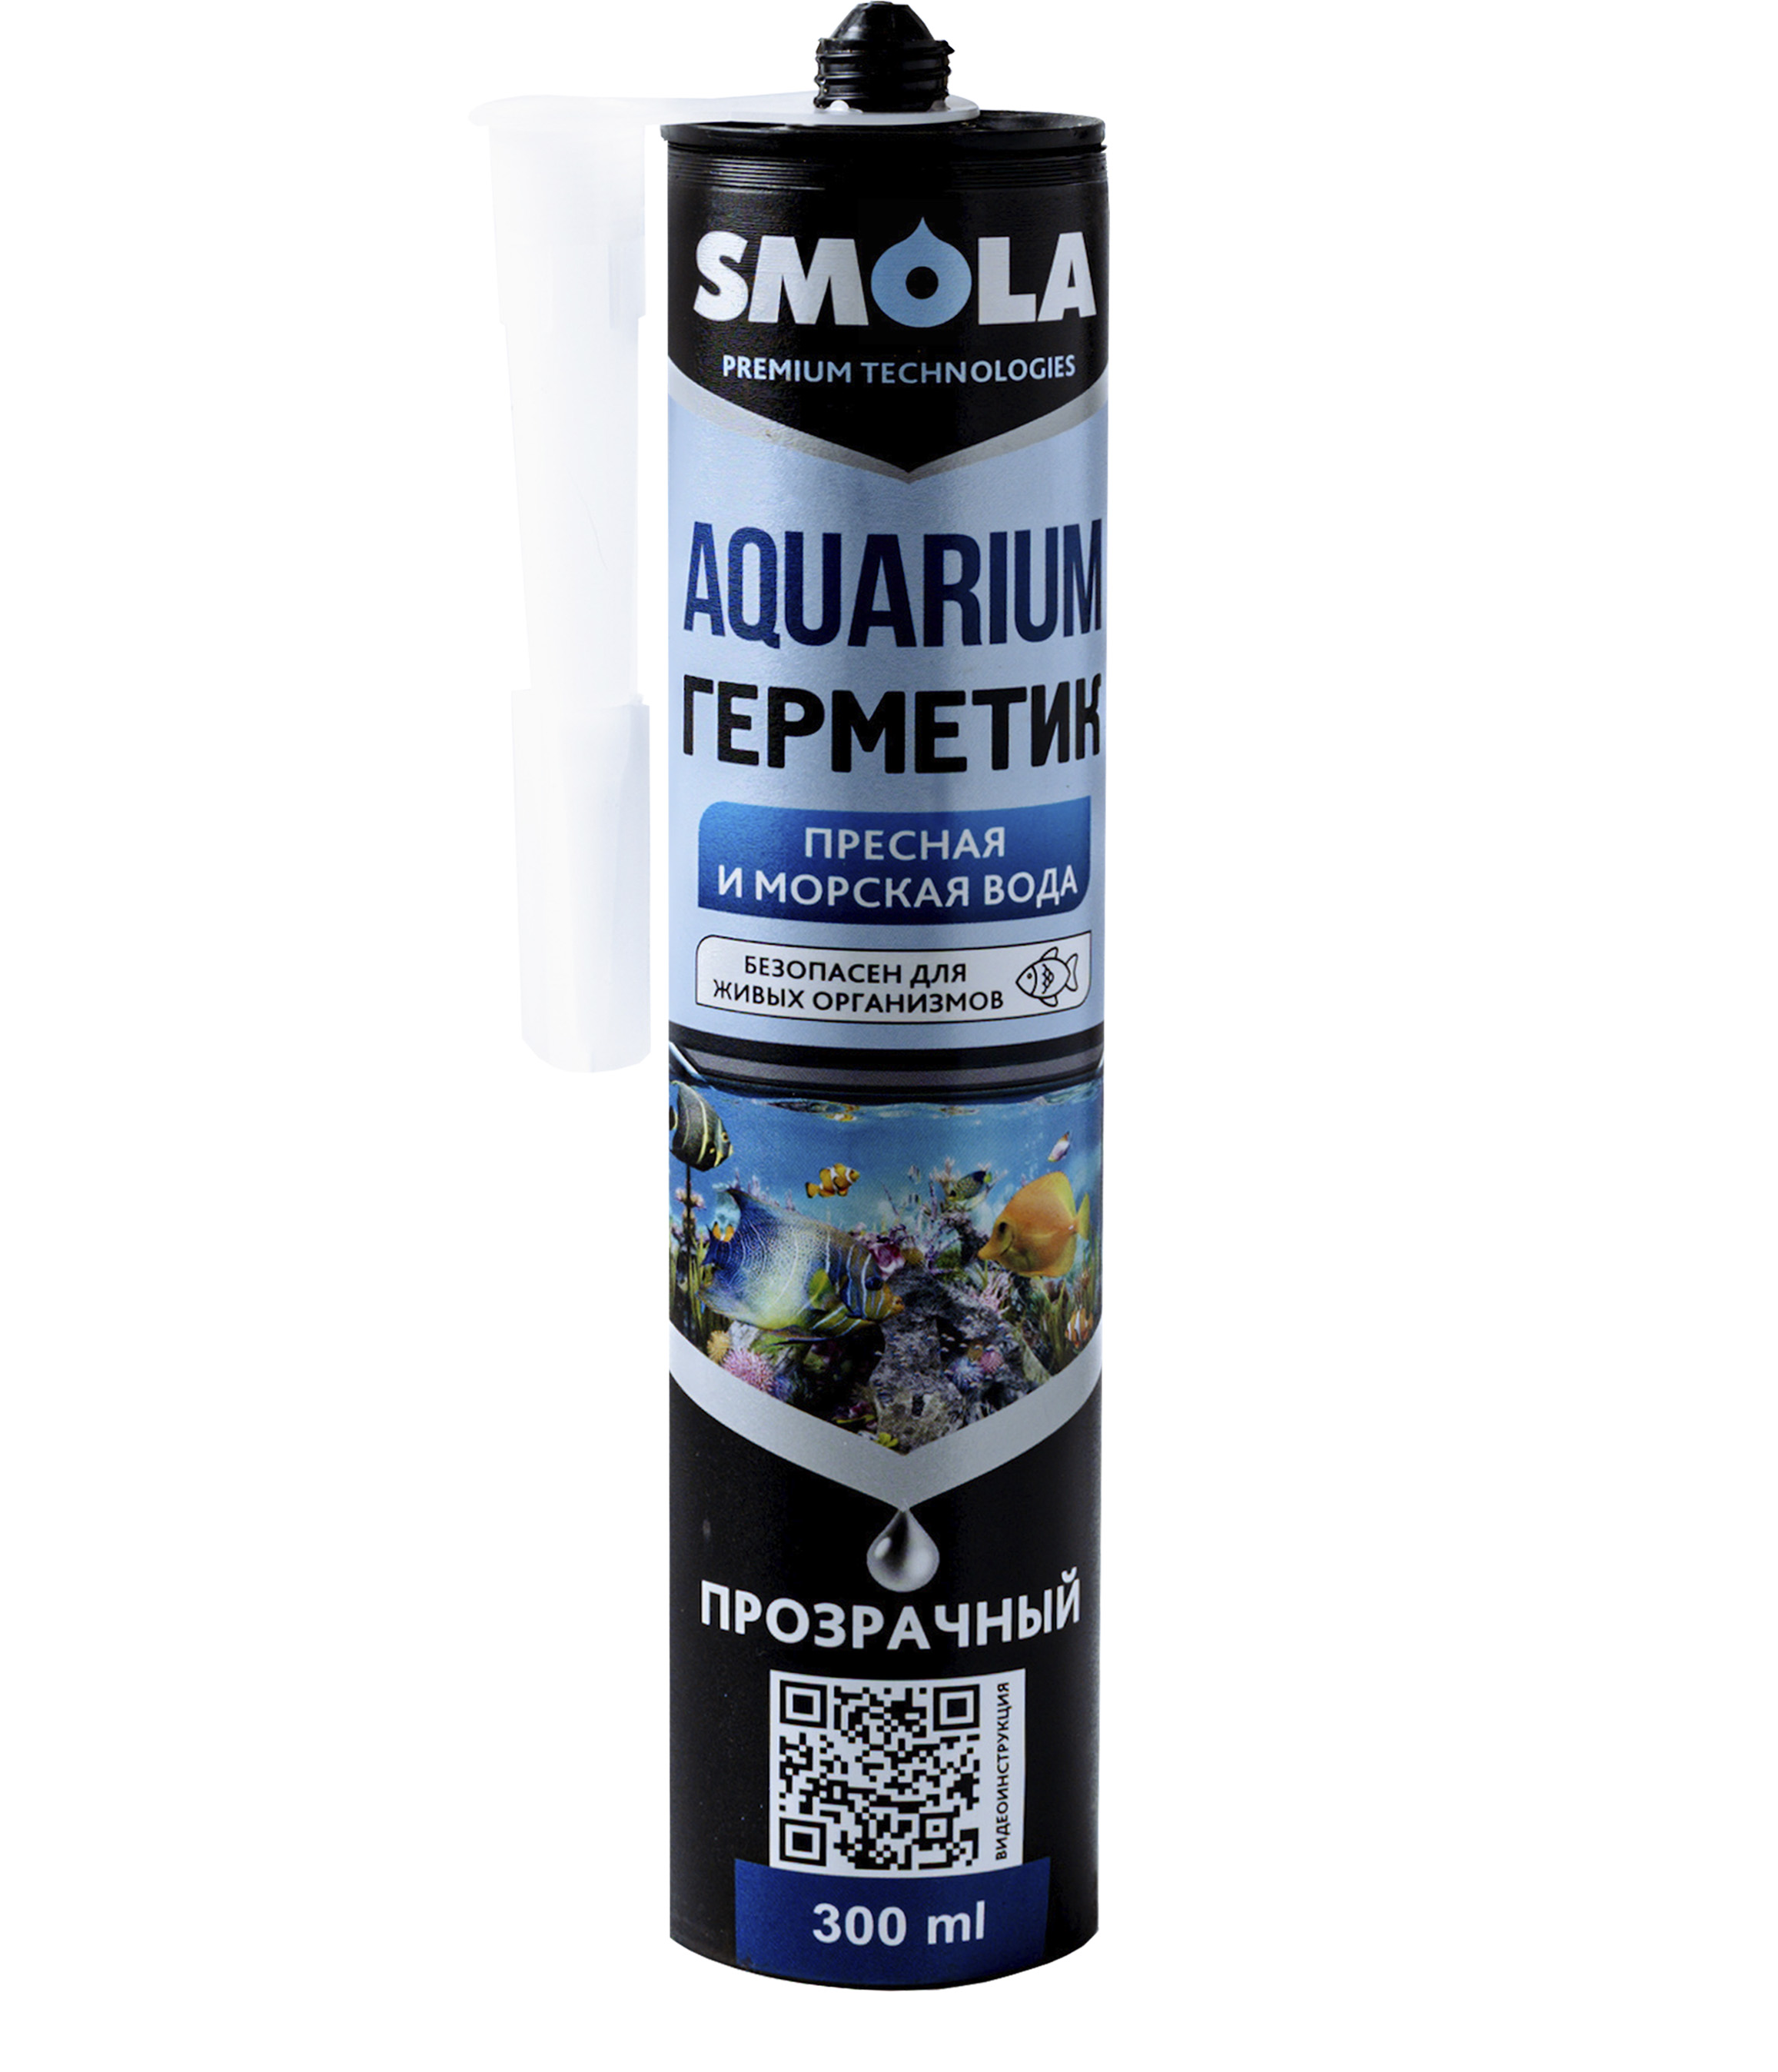 Герметик Smola Aquarium аквариумный, прозрачный, 300 мл jbl aquarium tubing grey шланг для аквариумов и прудов серый